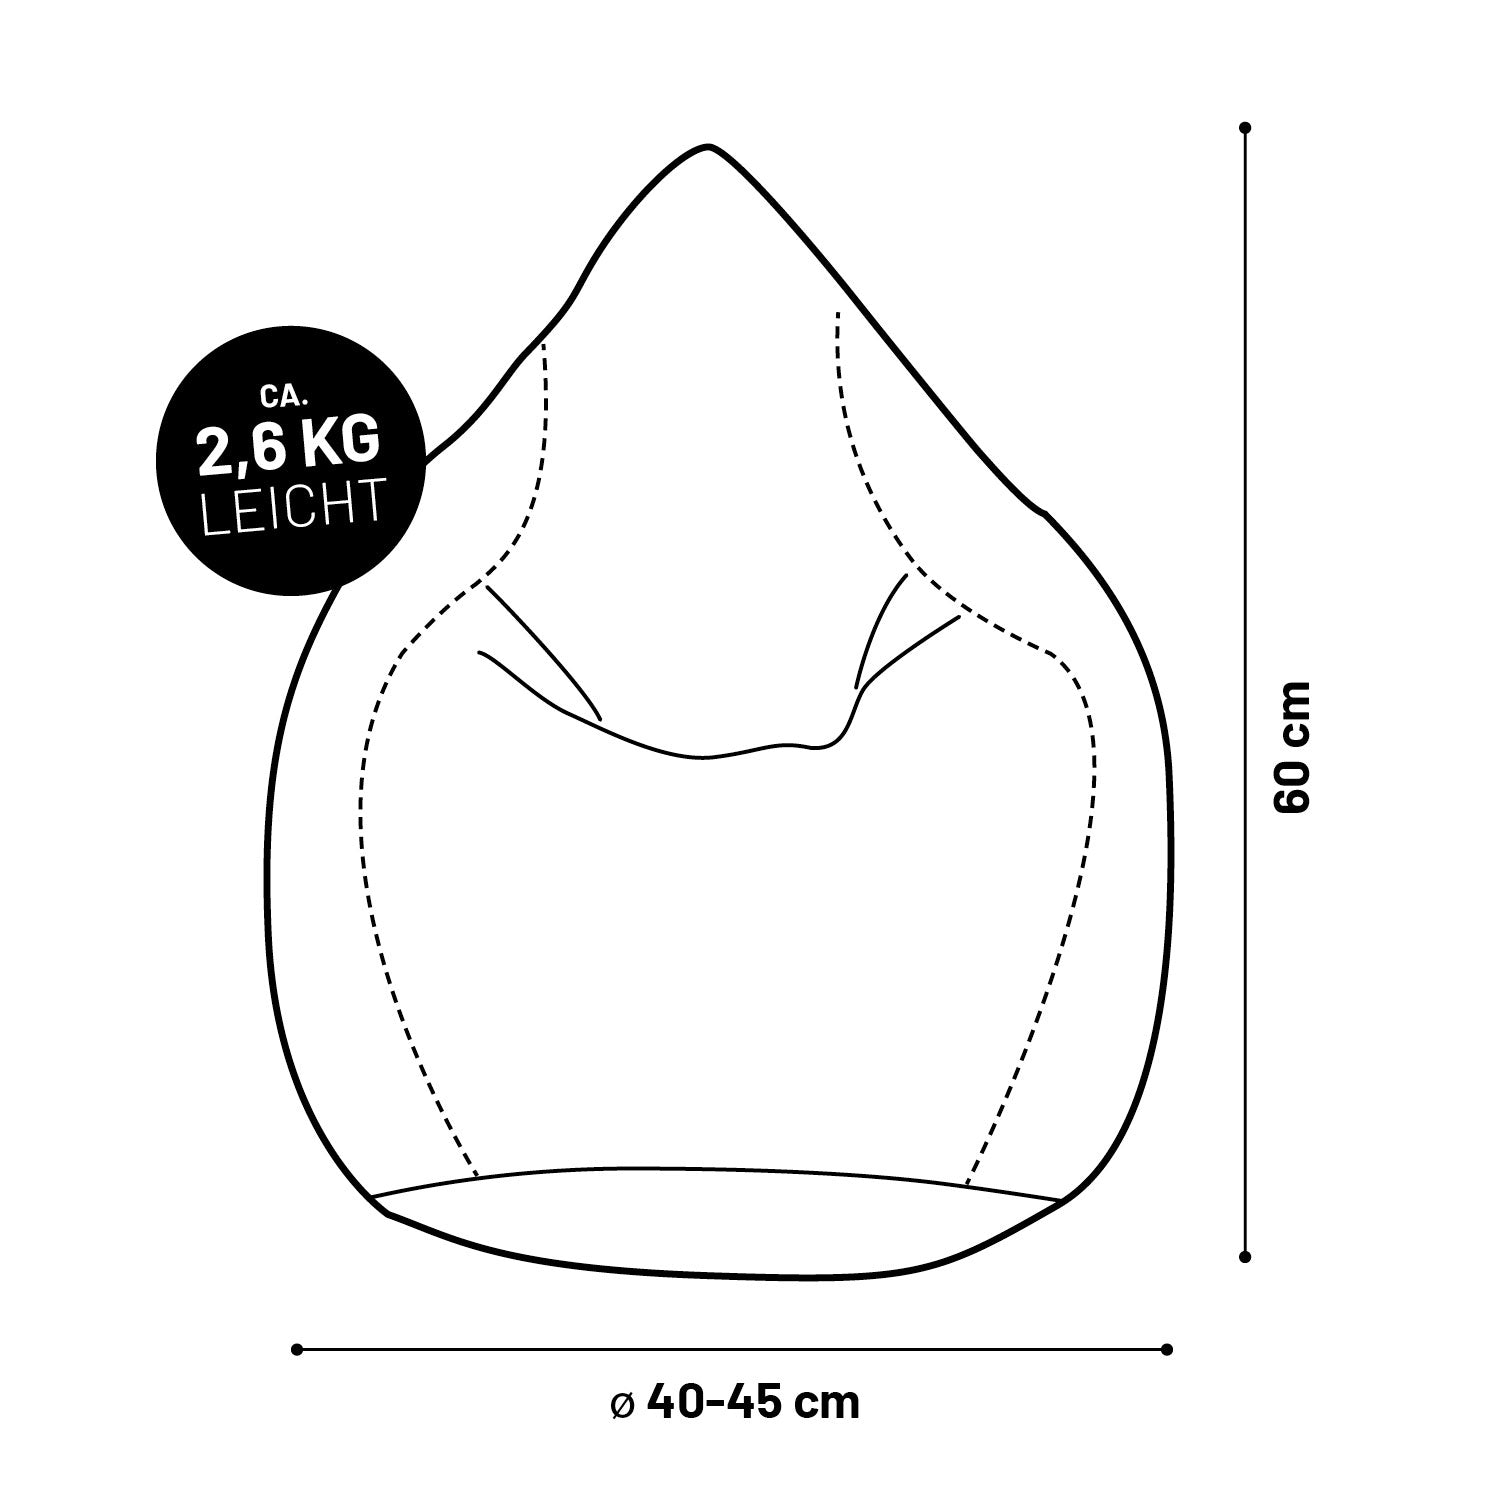 Luxury XL Sitzsack (120 L) - indoor - Beige